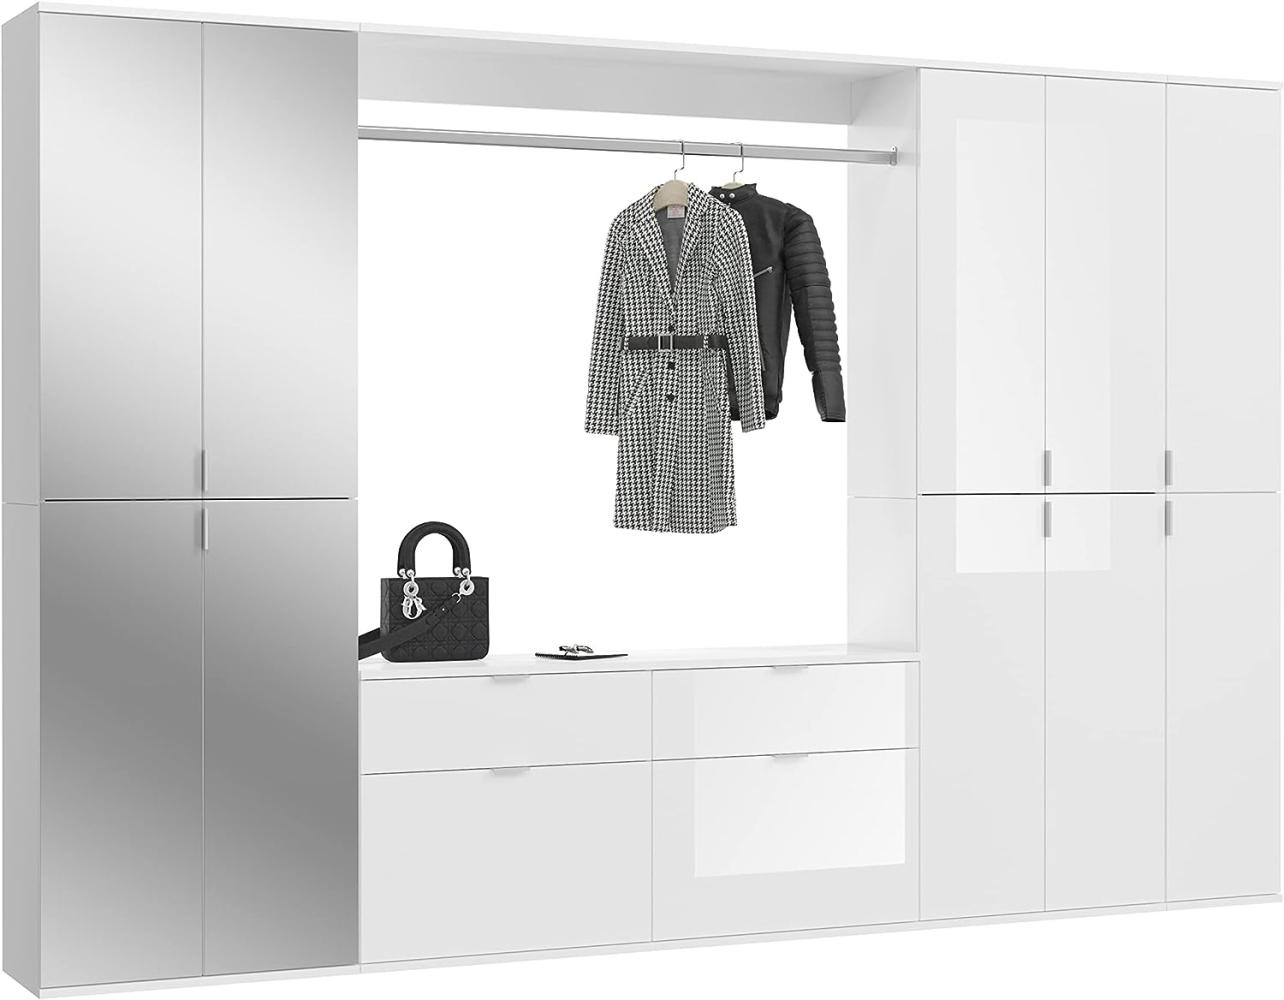 Garderobenschrank mit Spiegel ProjektX in weiß Hochglanz 273 x 193 cm Bild 1